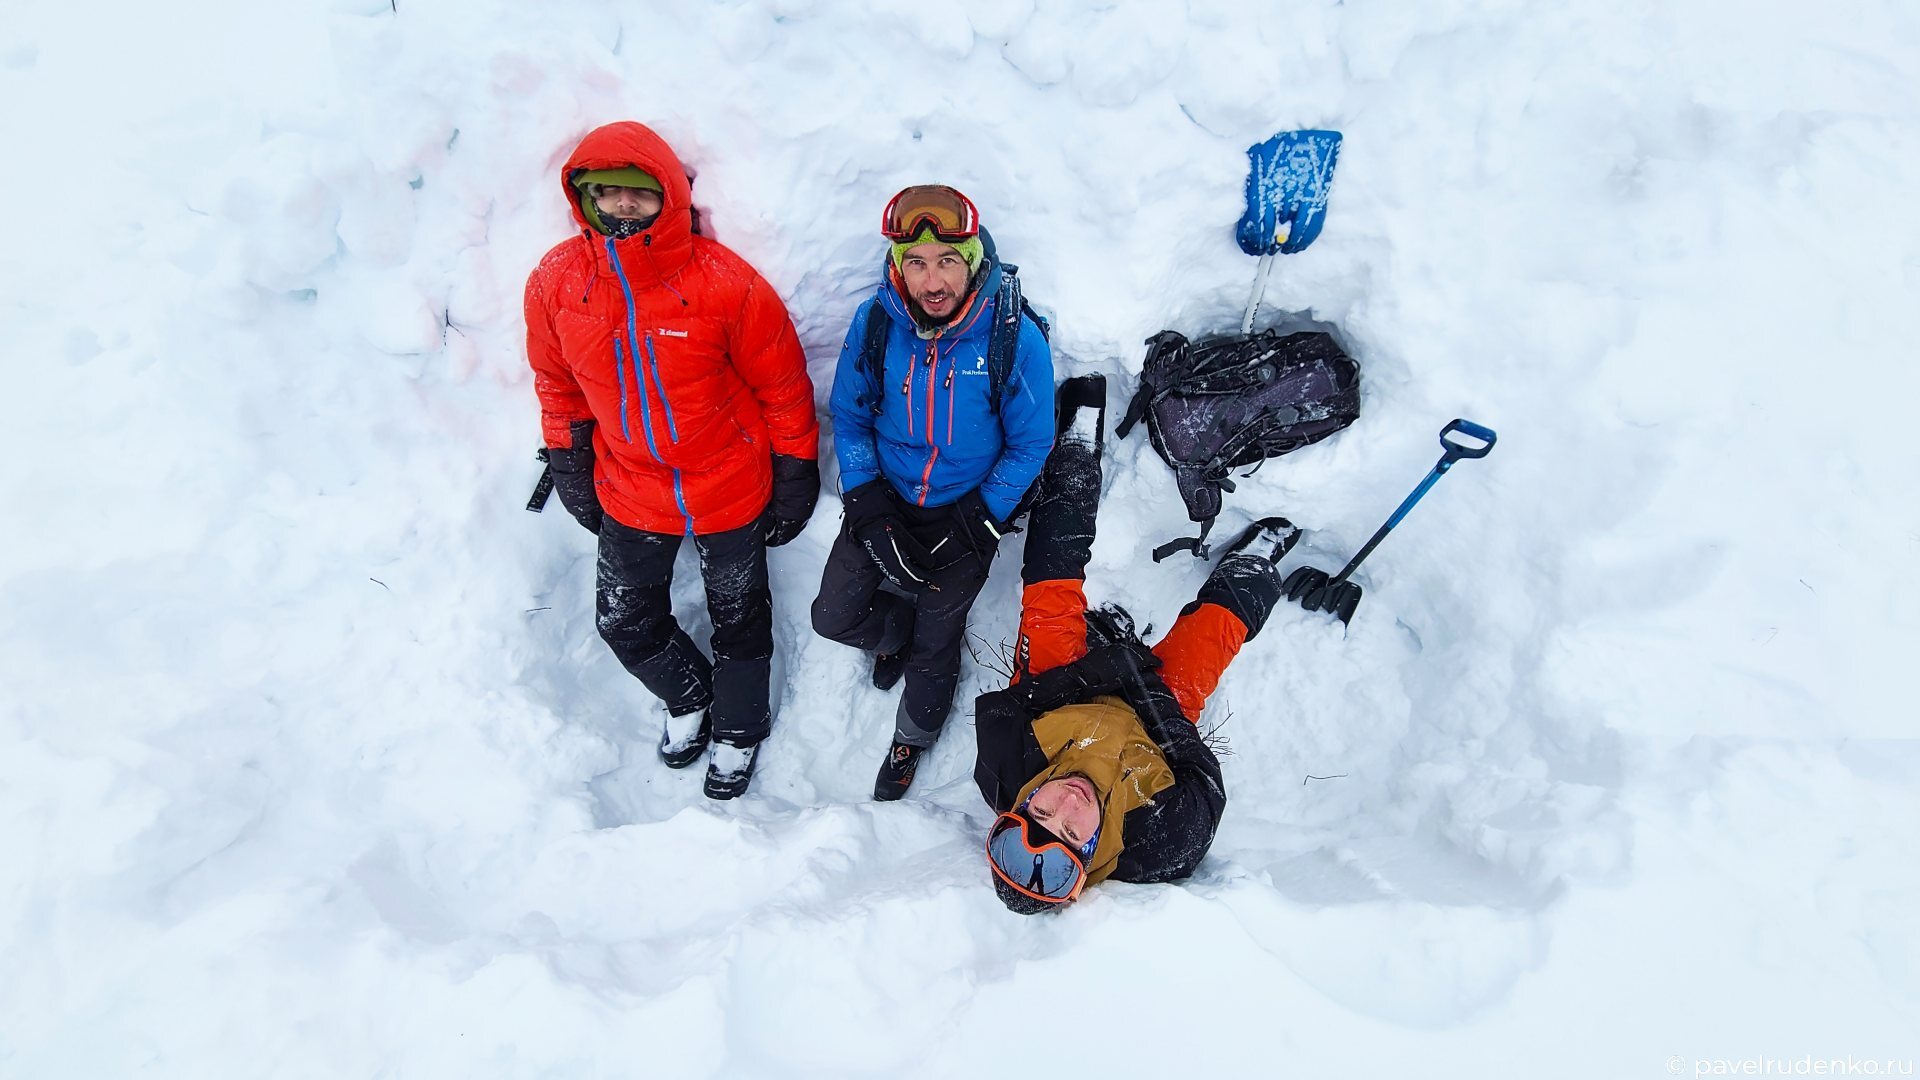 Фотография лавинные курсы скитур лыжный поход зима снежная лопата яма